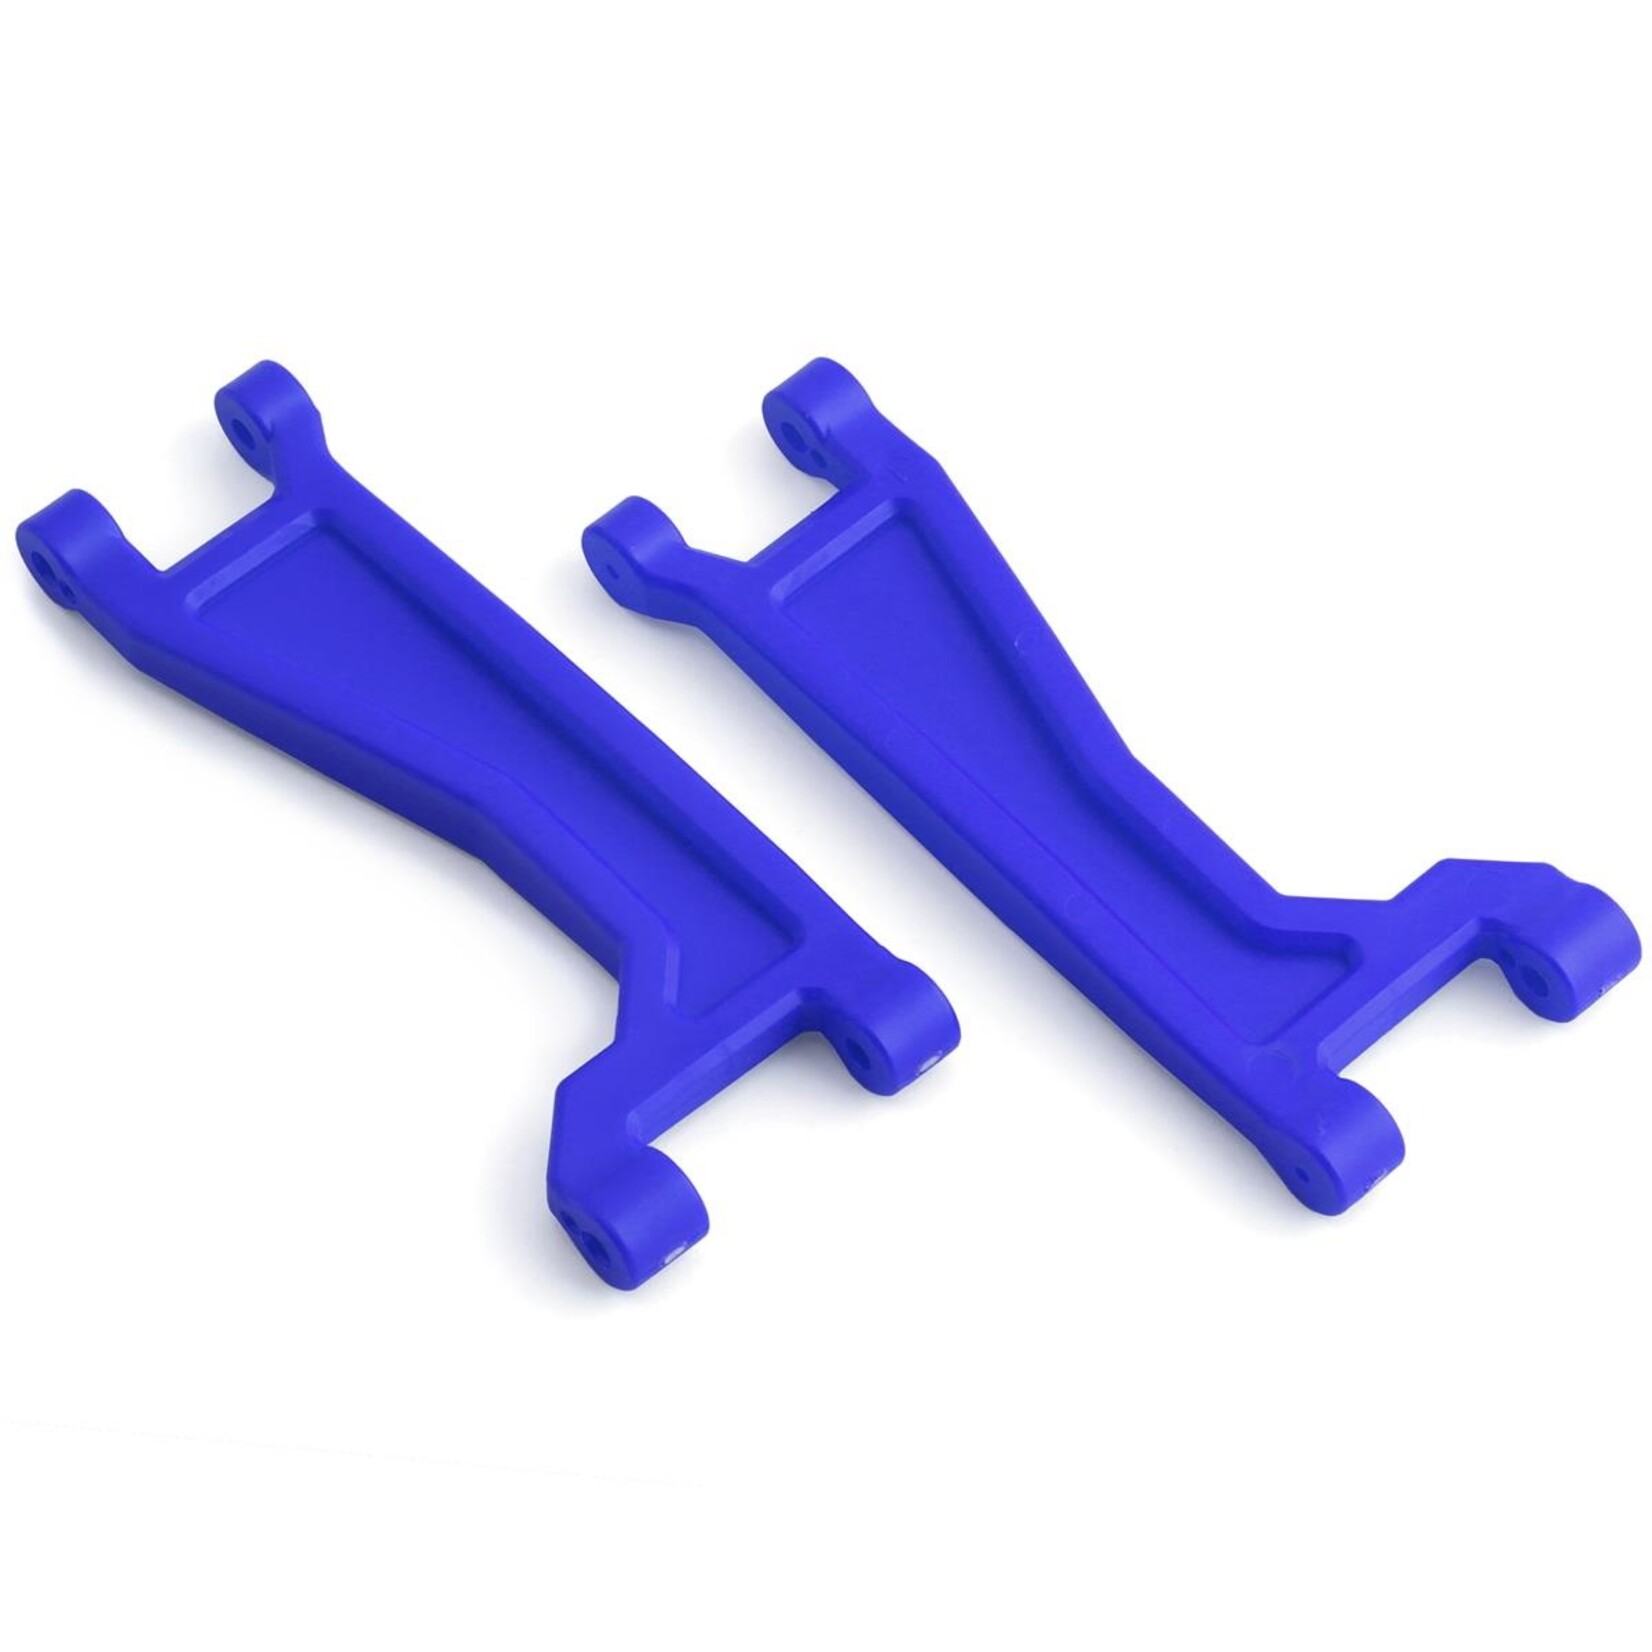 Traxxas Traxxas Maxx WideMaxx Upper Suspension Arms (Blue) (2) #8998X